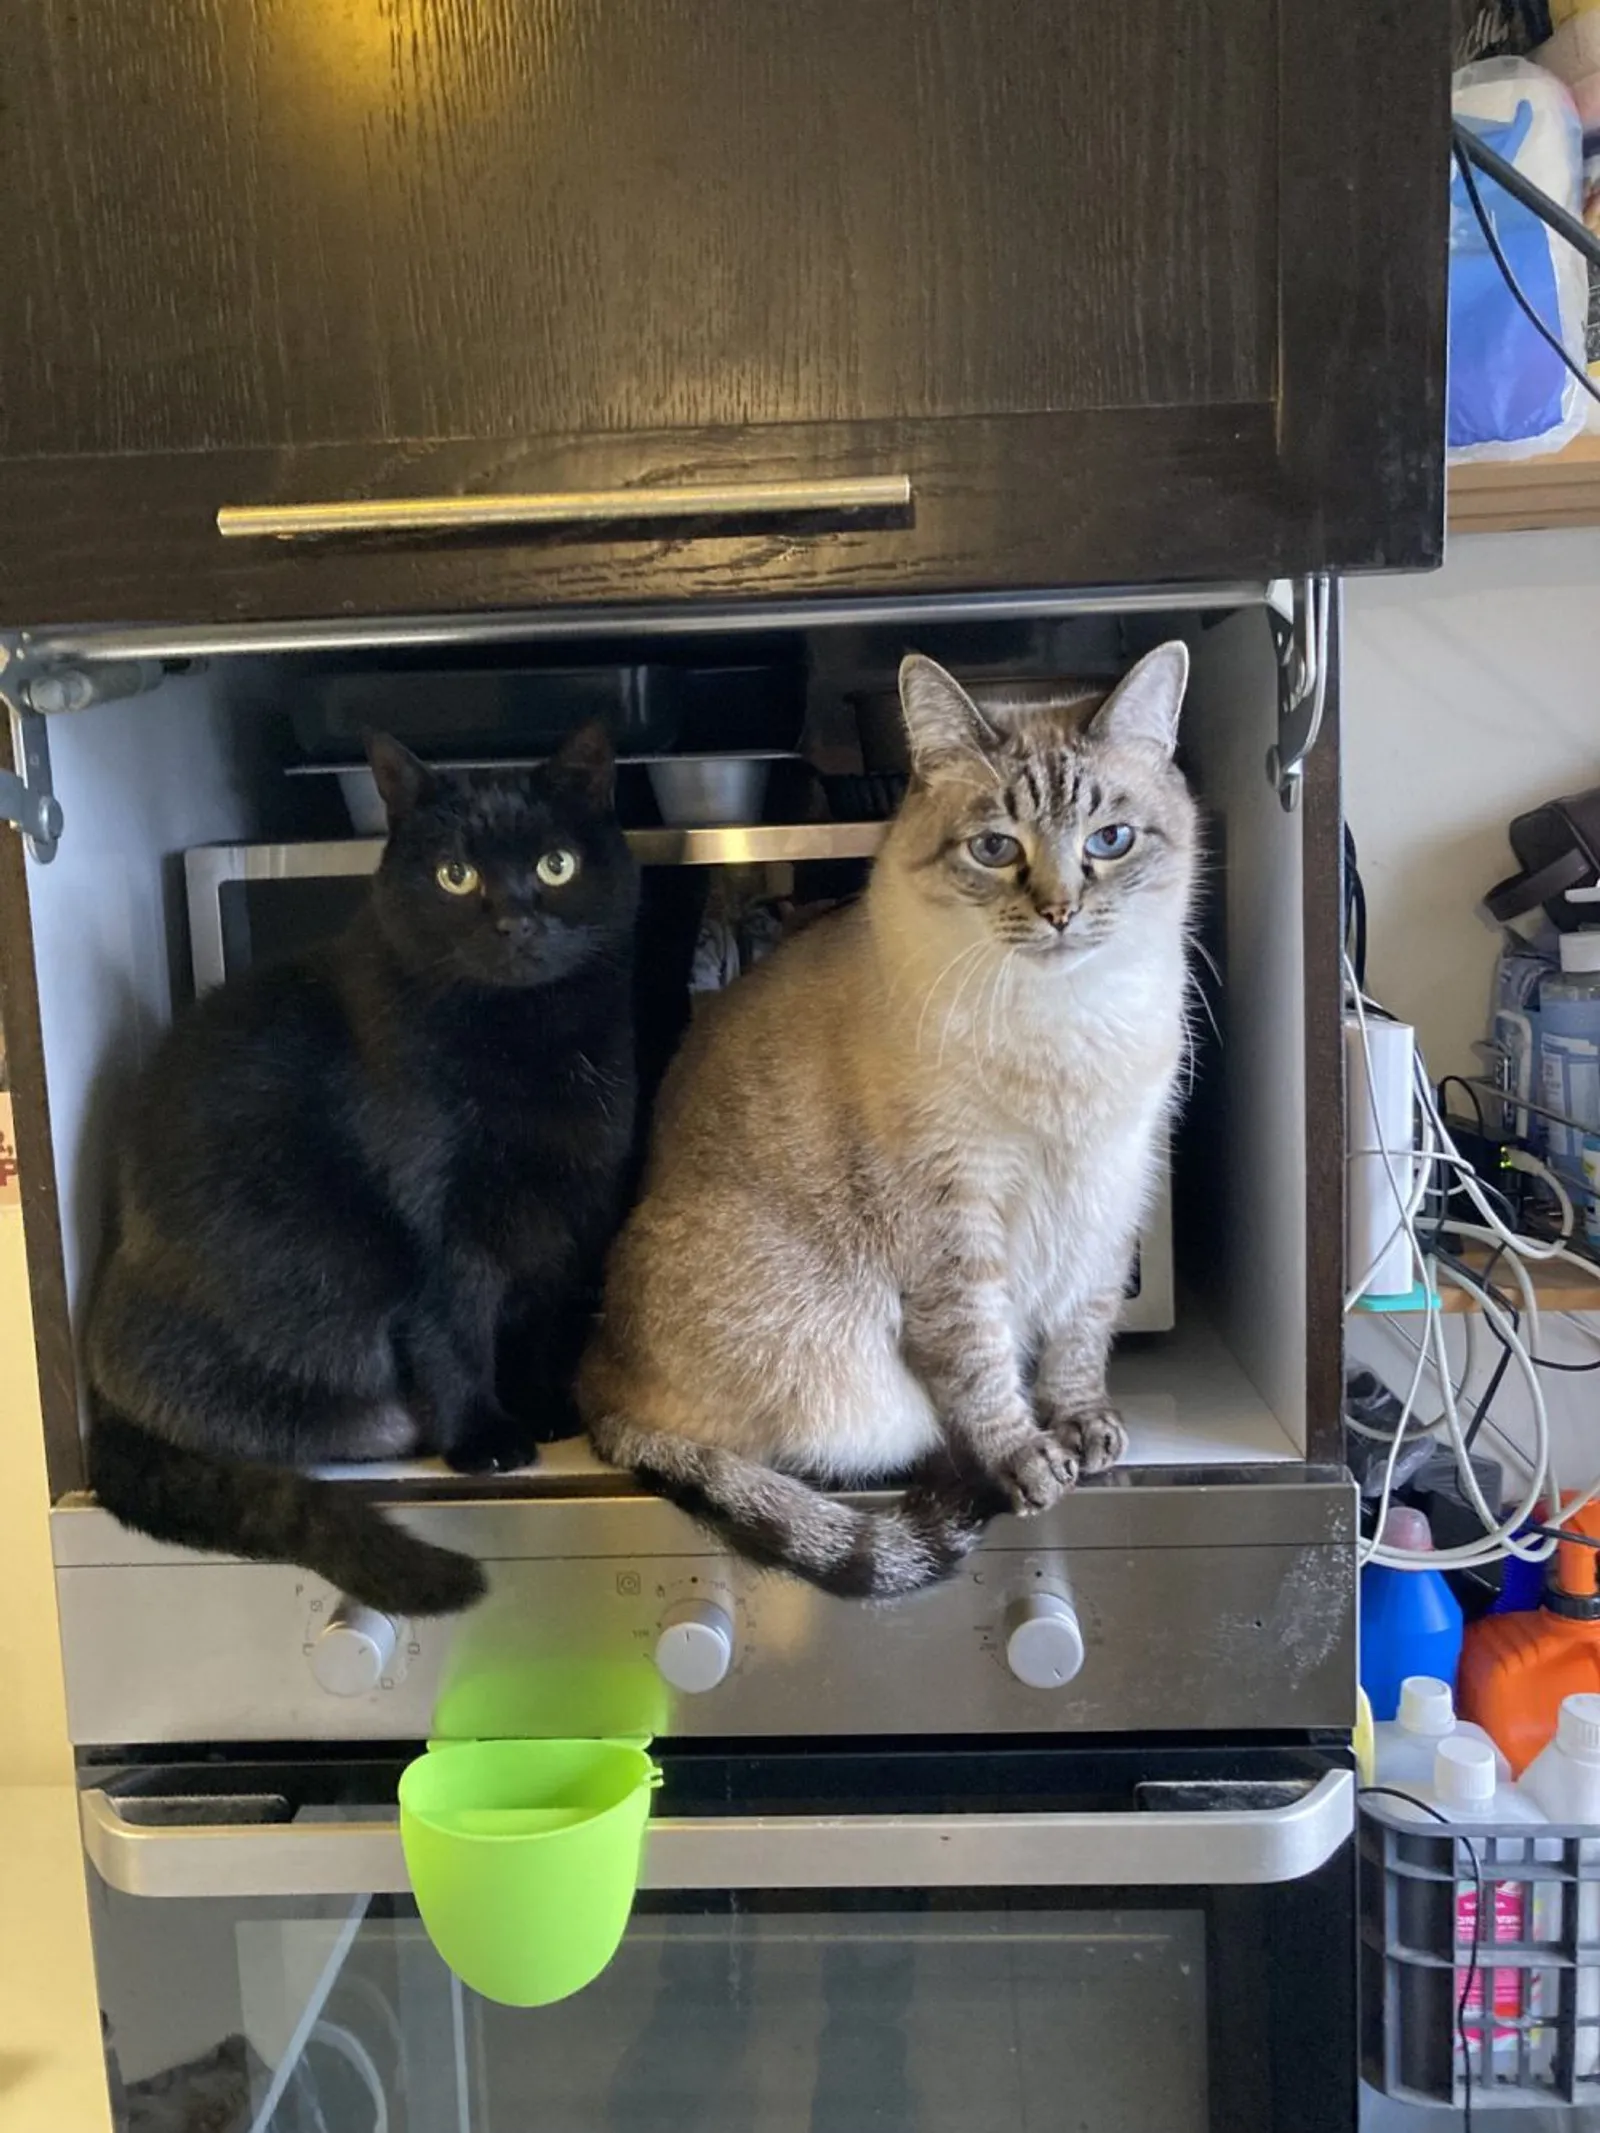 10 Potret Kucing Sedang Bersantai di Dalam Microwave, Berani Banget!